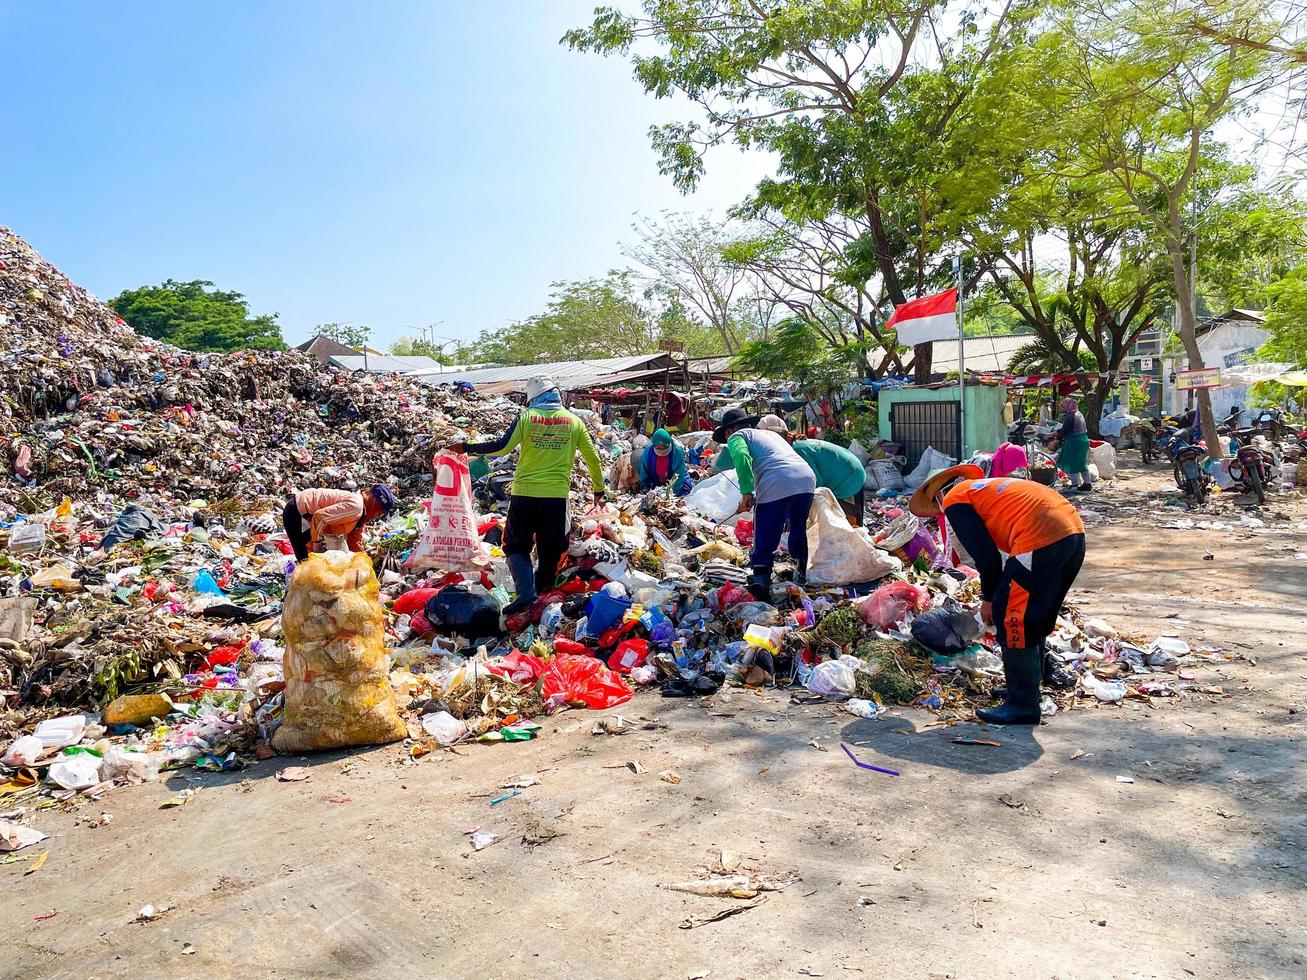 ponorogo, indonesia 2021 - persone che smistano e raccolgono in discarica. foto